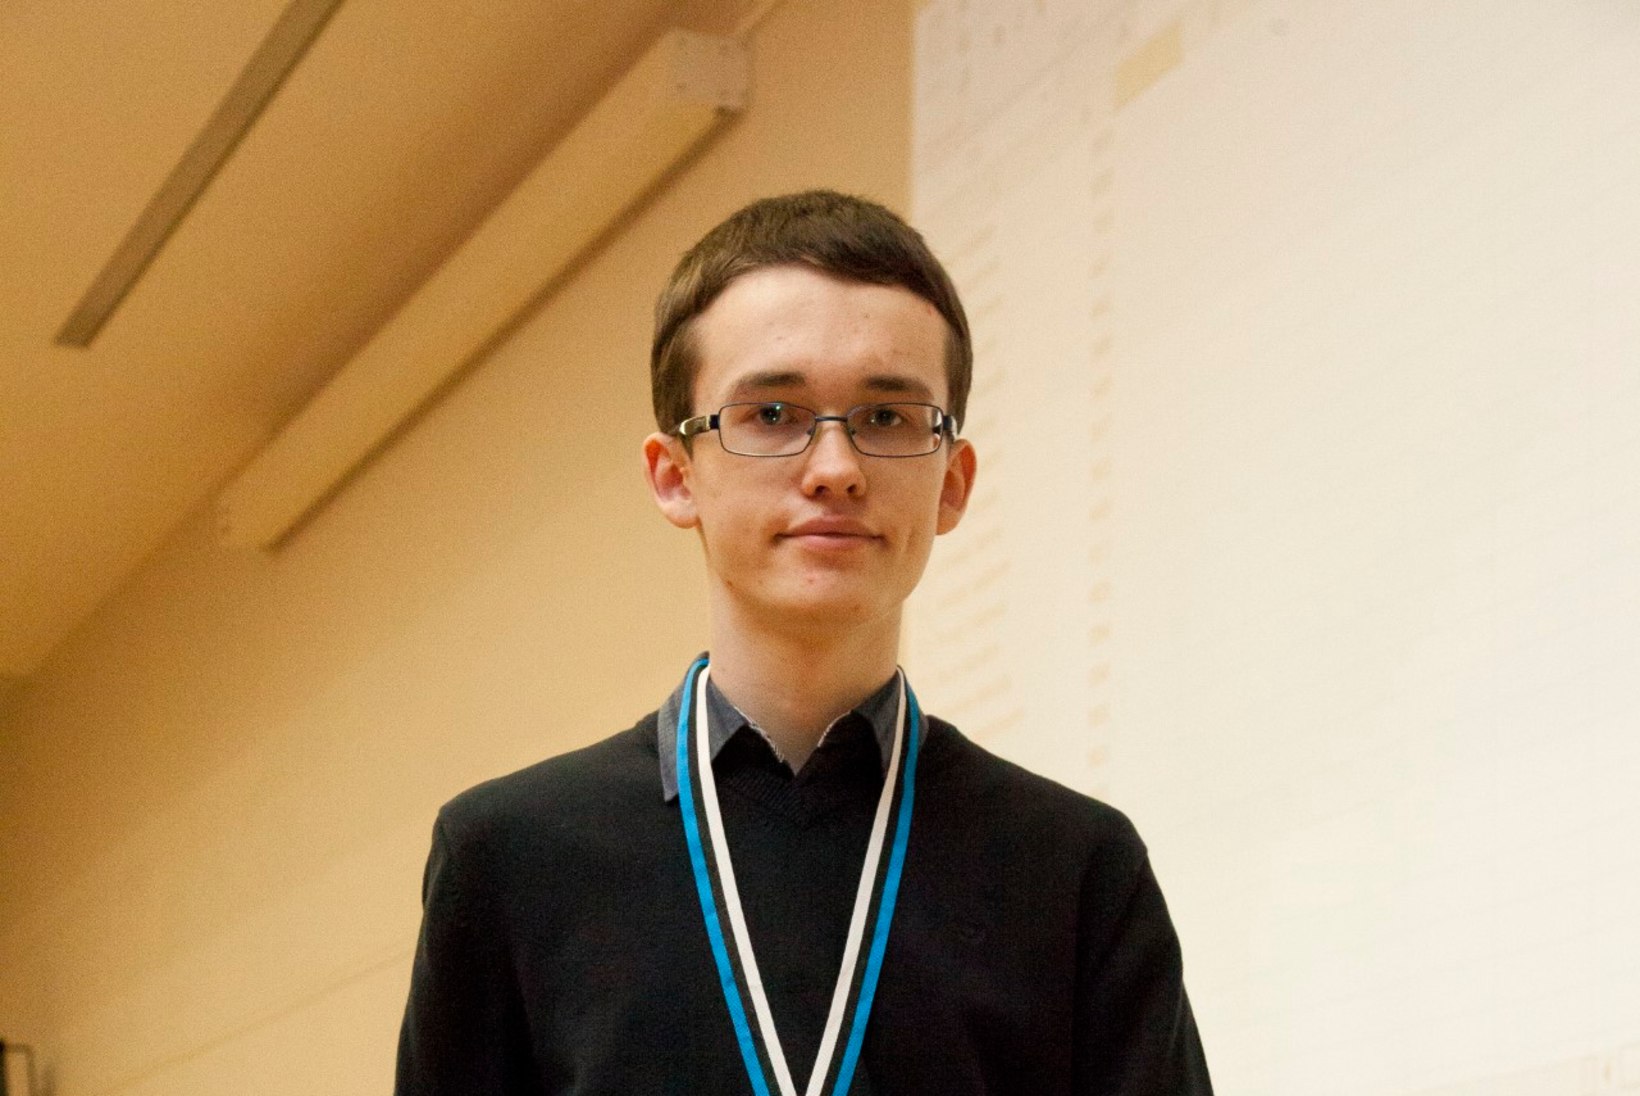 17aastane noormees sai kolmekordseks Eesti meistriks ristsõnade lahendamises